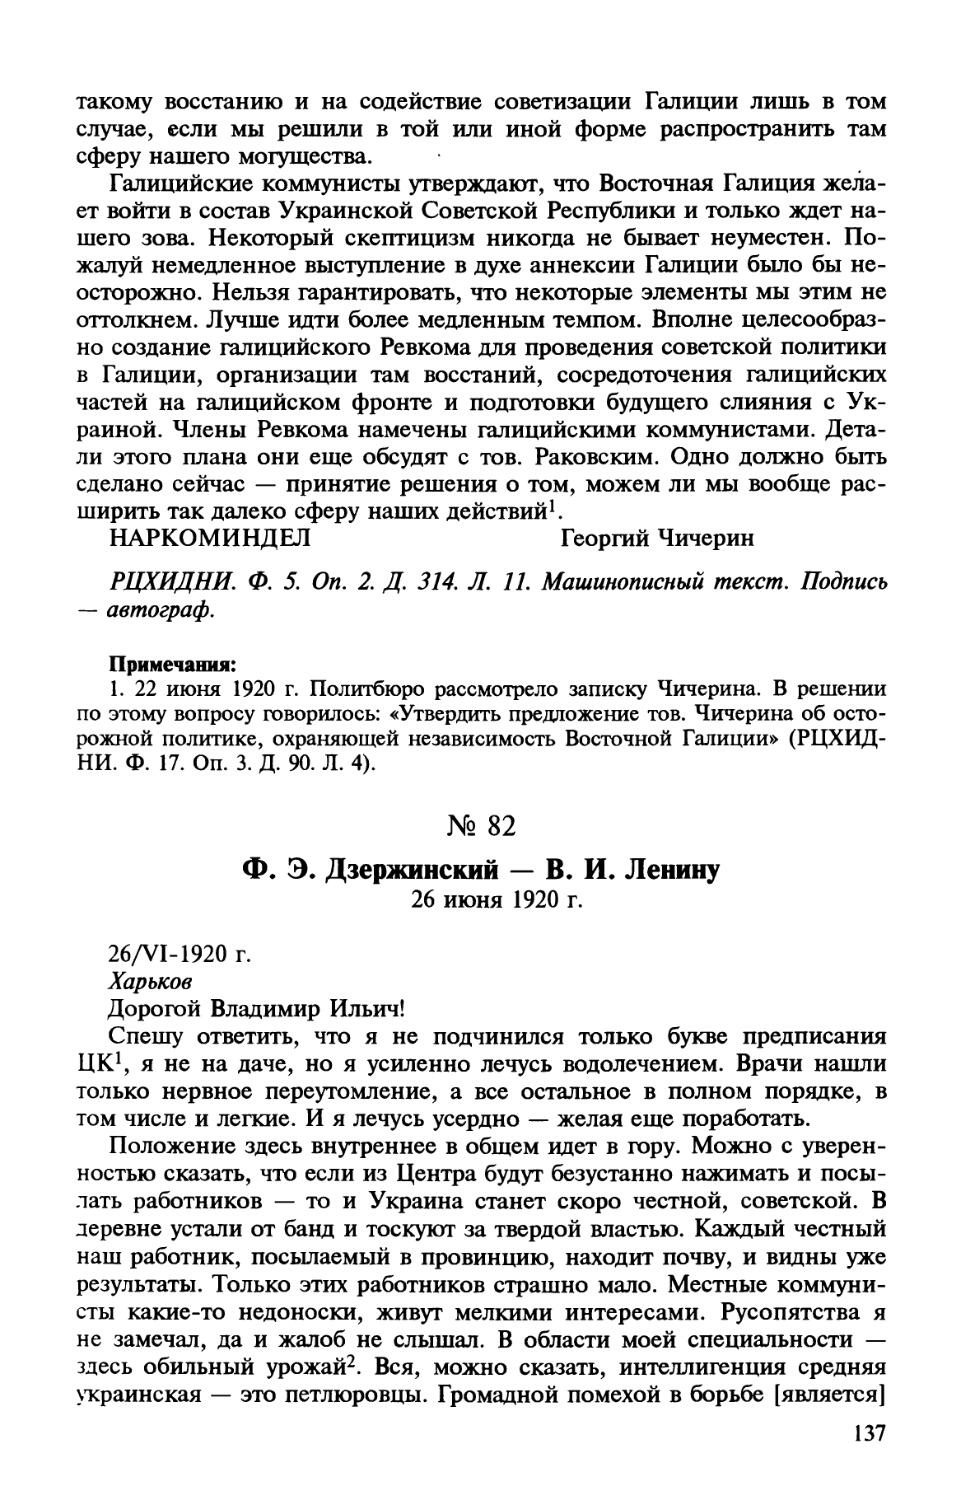 82. Ф. Э. Дзержинский — В. И. Ленину. 26 июня 1920 г.